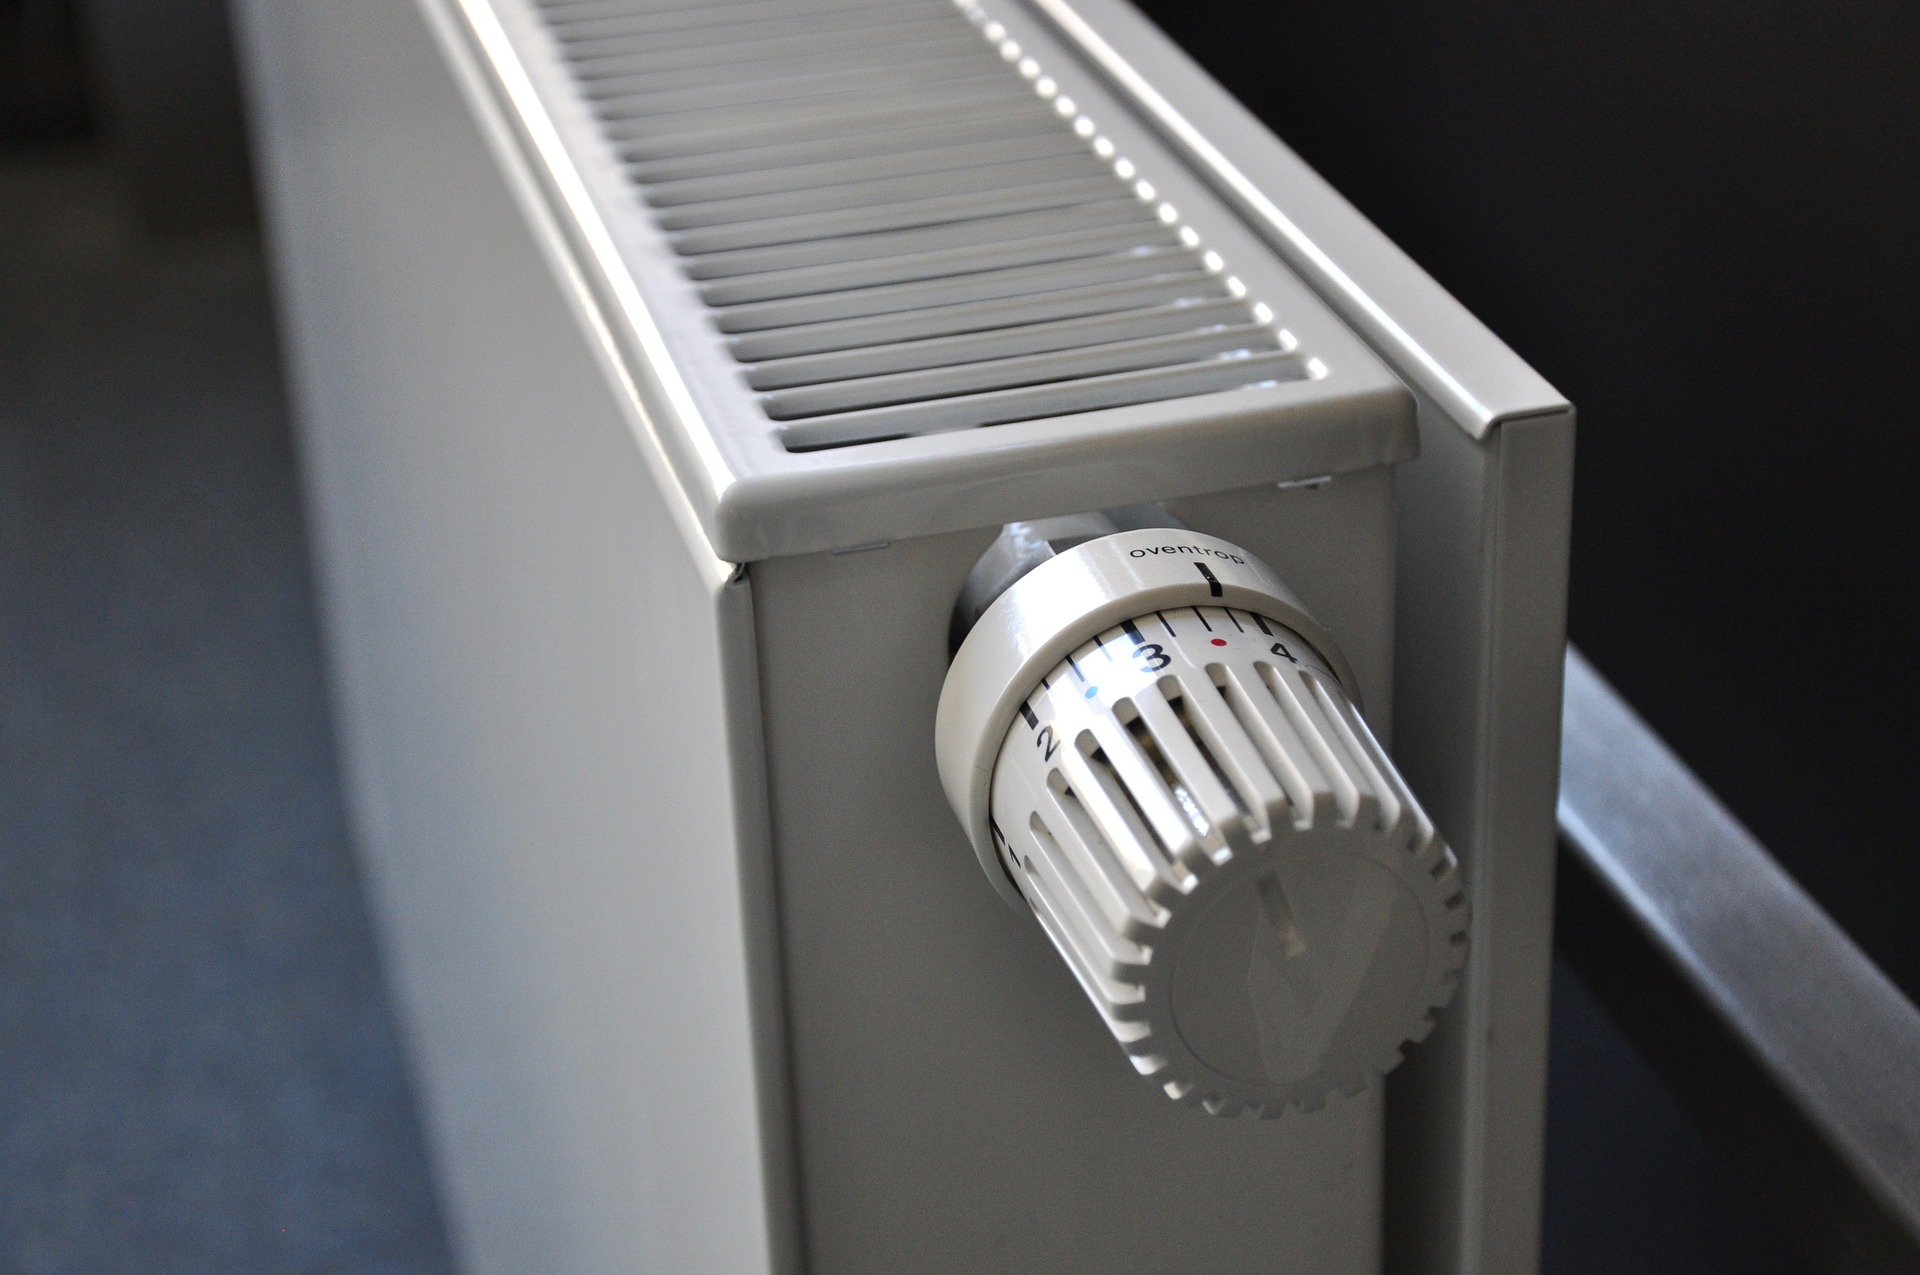 Chaudière : thermostat d’ambiance ou robinet thermostatique ?